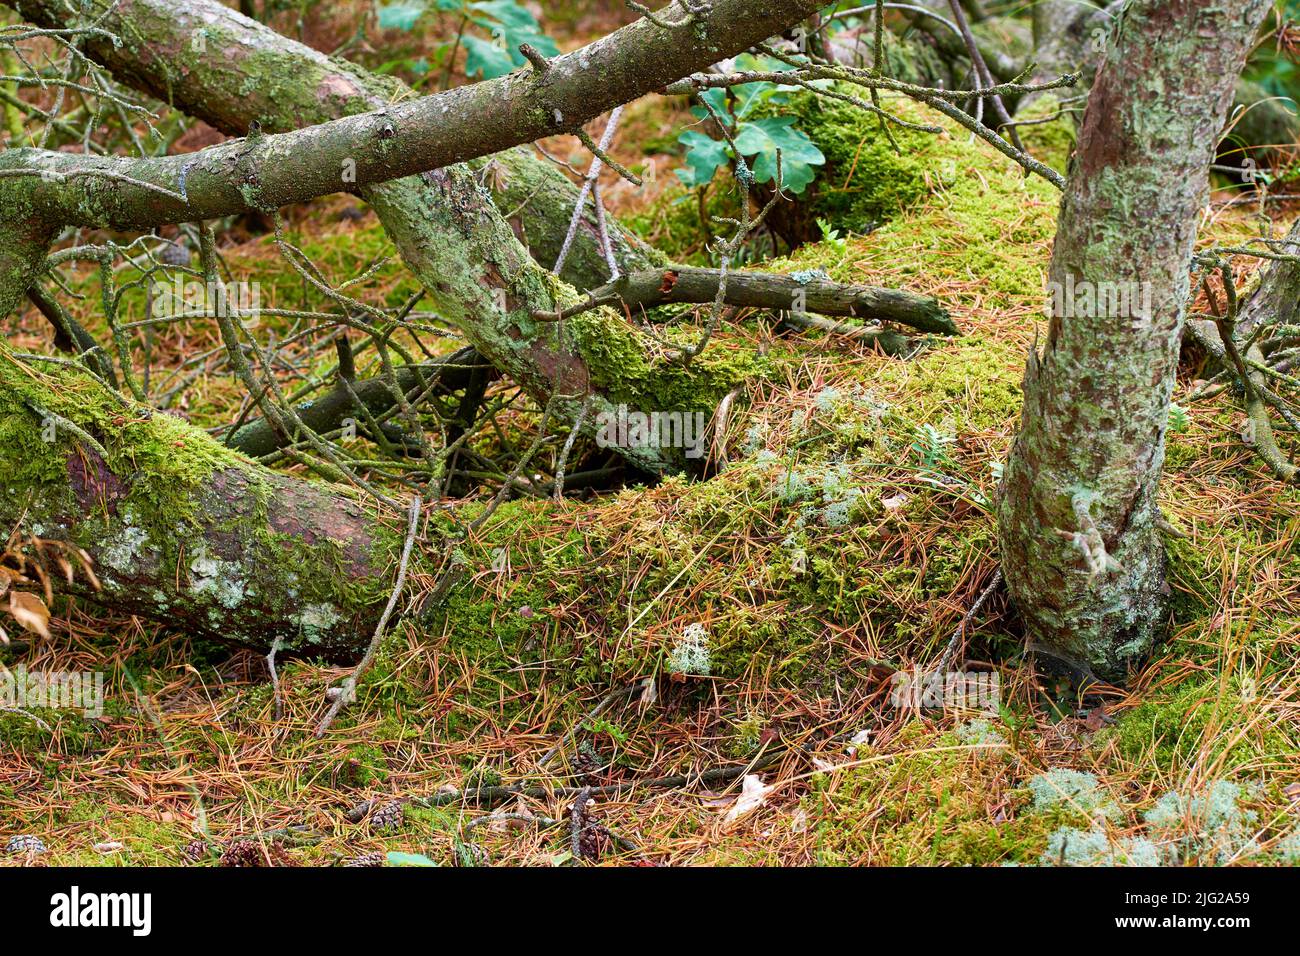 Blick auf alte trockene Pinien im Wald. Gefallene Kiefern nach einem Sturm oder starkem Wind, gelehnt und beschädigt. Grünes Moos oder Algen wachsen auf dem Baum Stockfoto